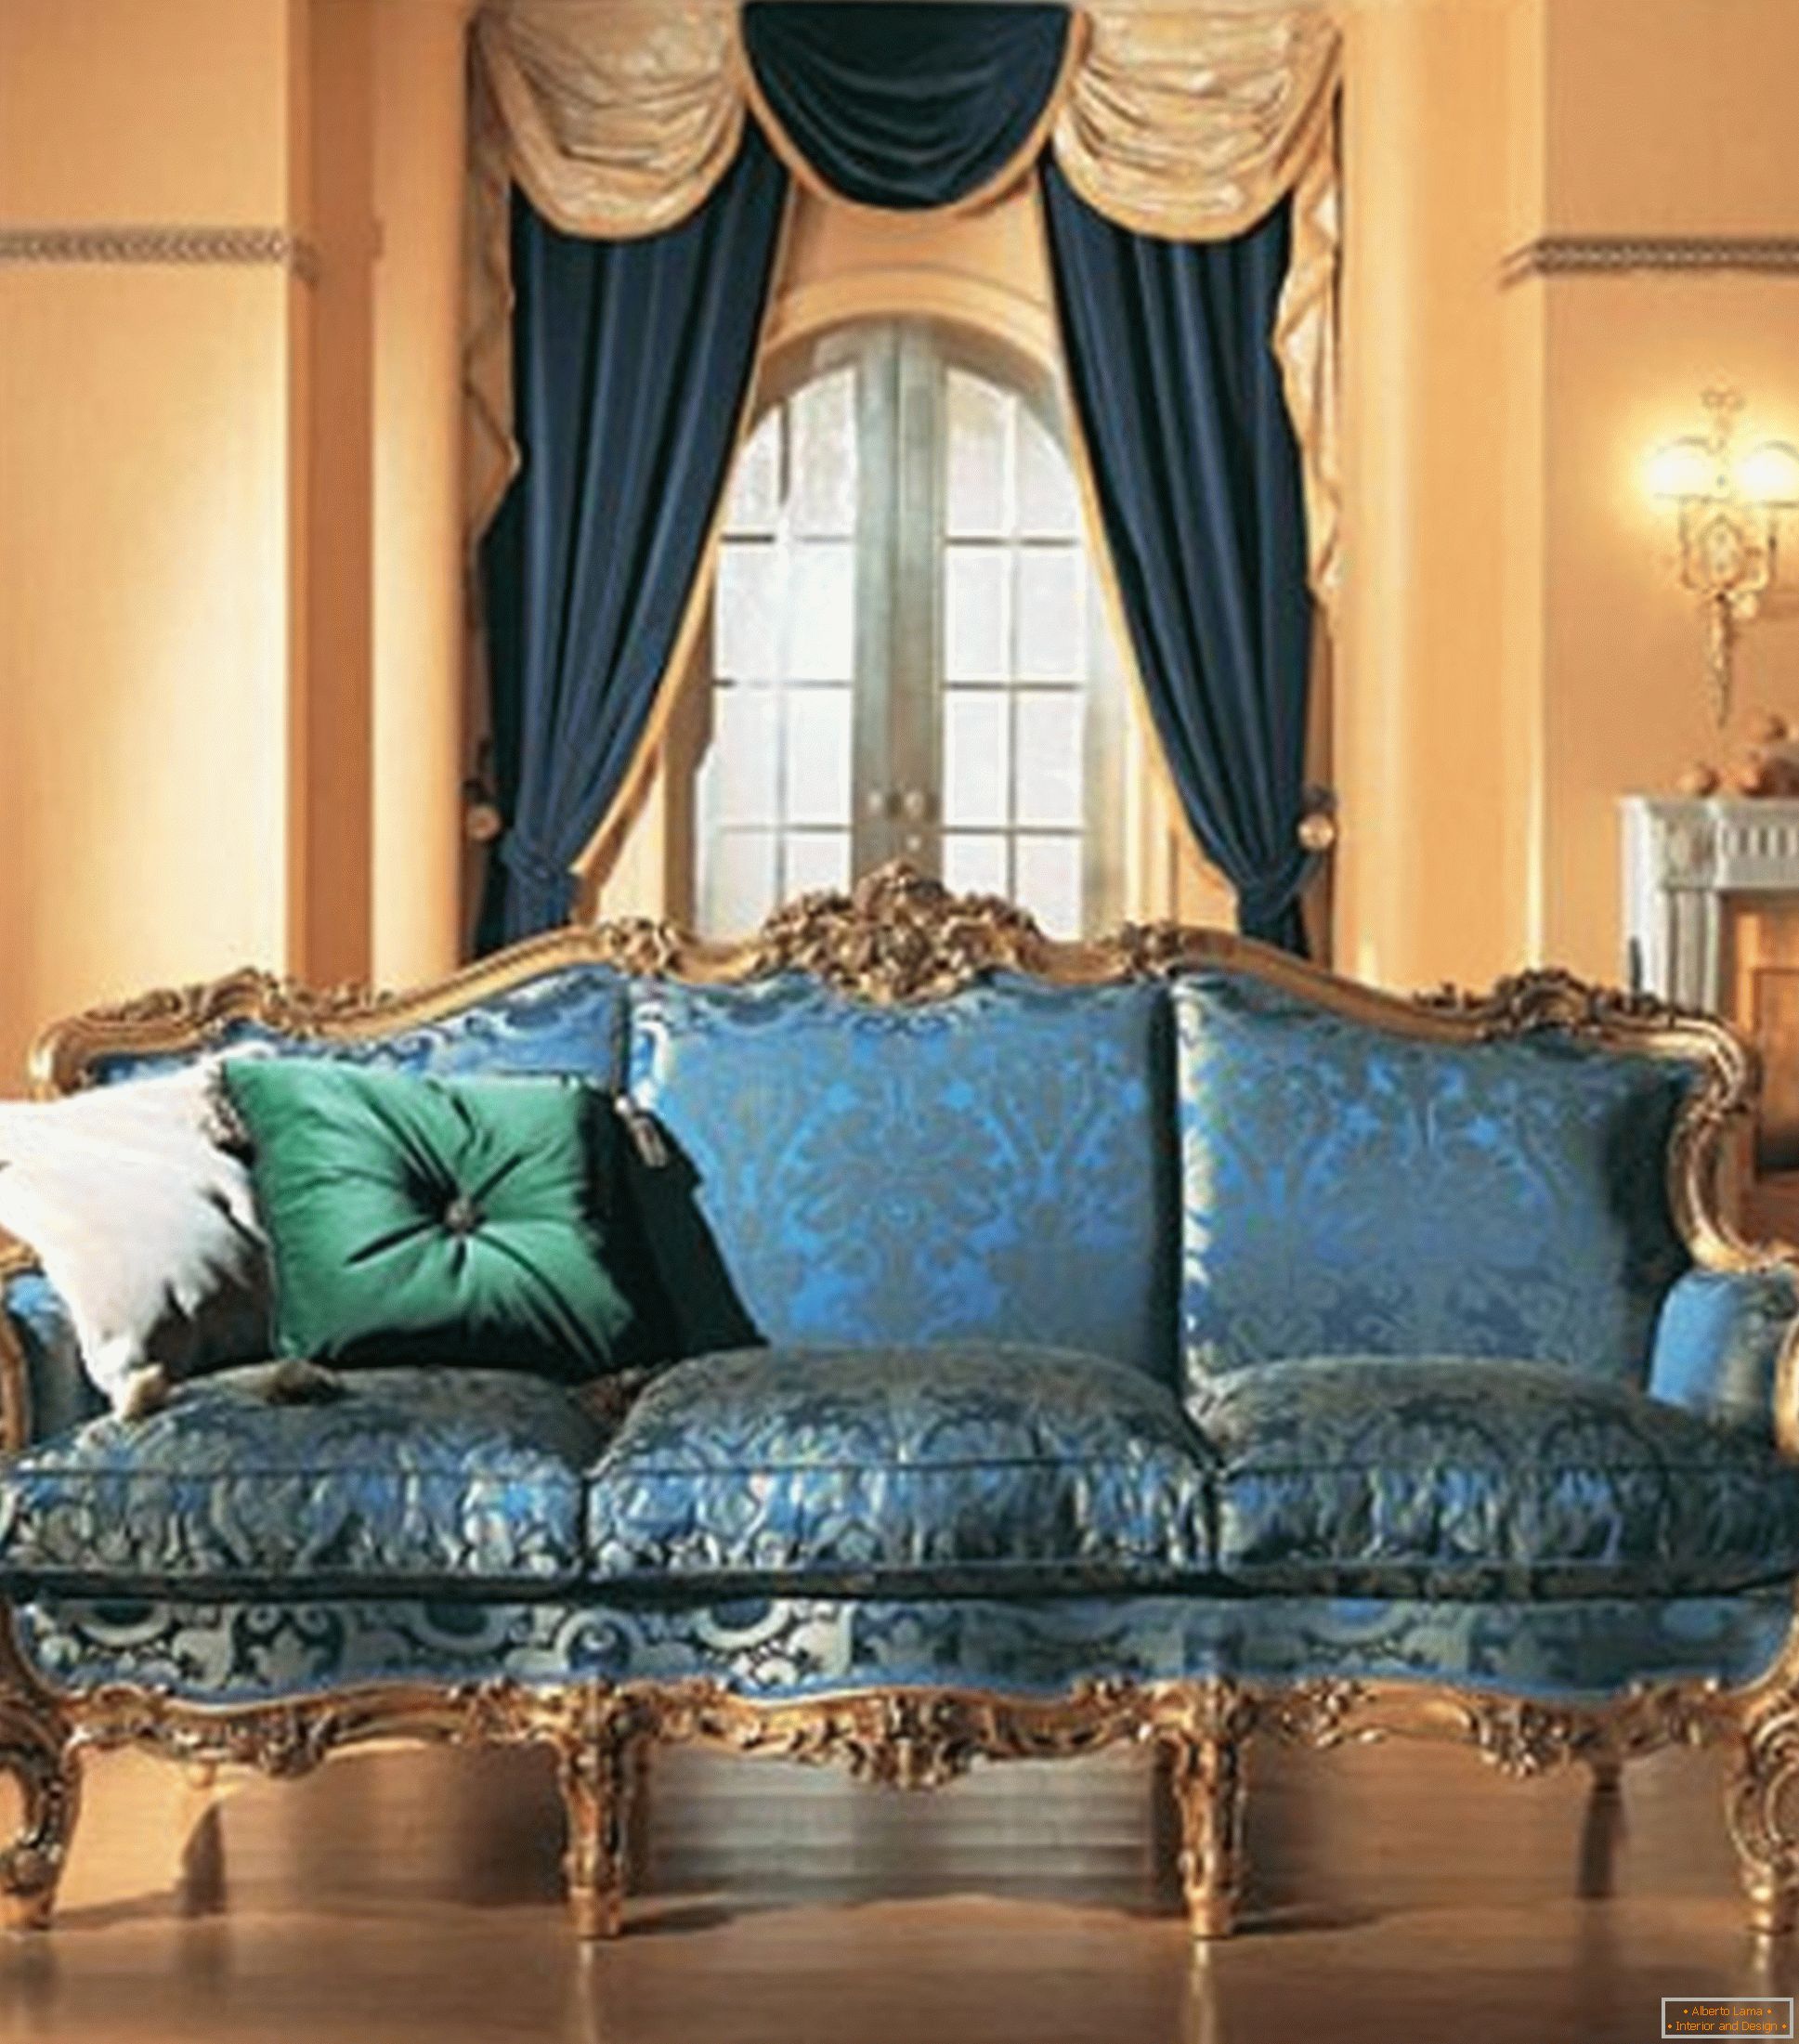 Kombinacija kontrastnih barv v dekoraciji dnevne sobe v baročnem slogu.